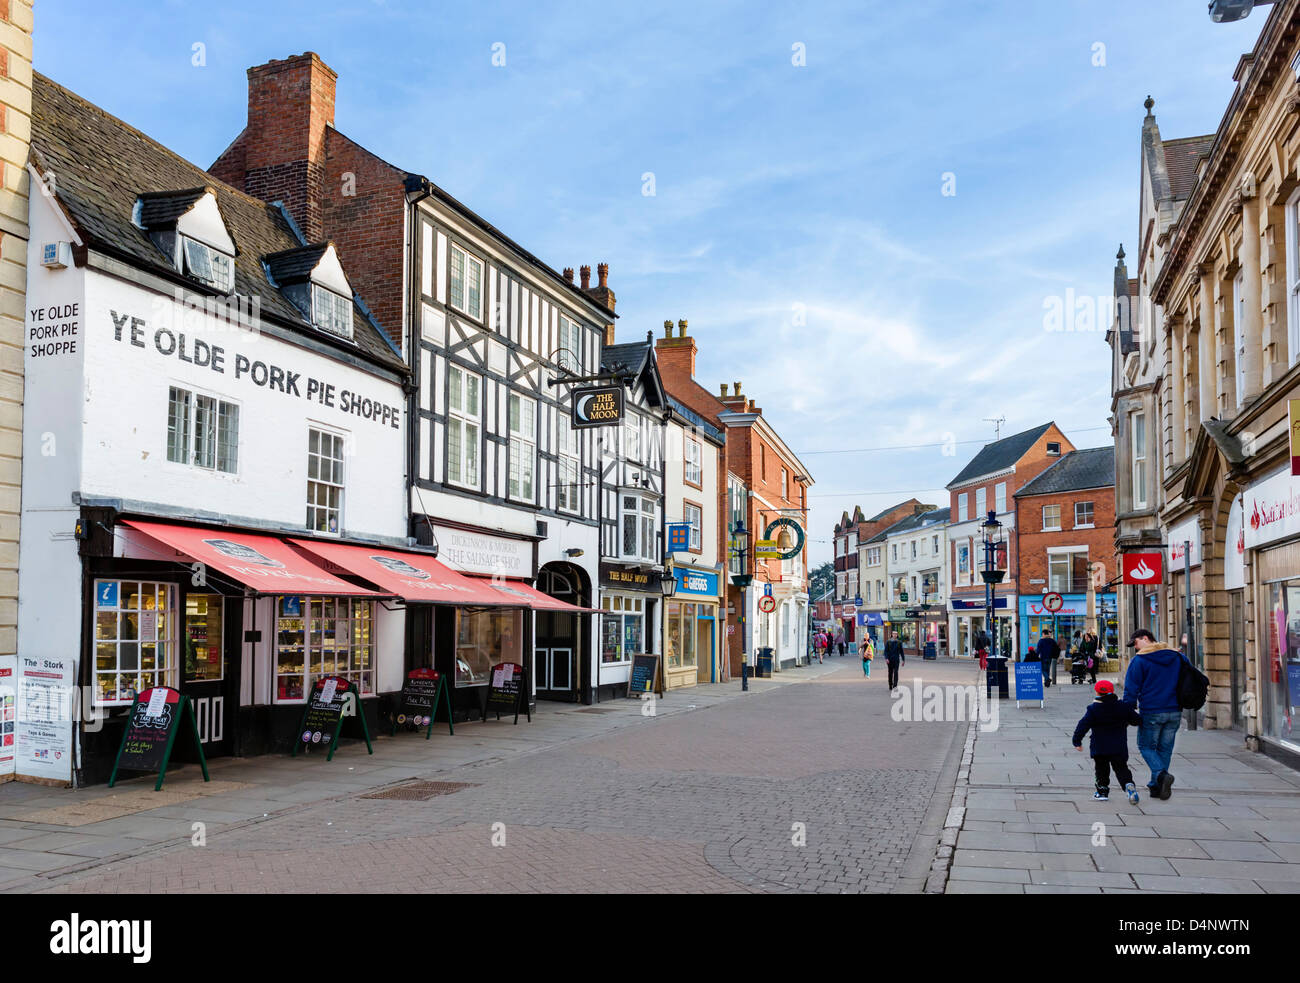 Nottingham Street nel centro della cittadina con il Ye Olde pasticcio di maiale Shoppe a sinistra, Melton Mowbray, Leicestershire, Regno Unito Foto Stock